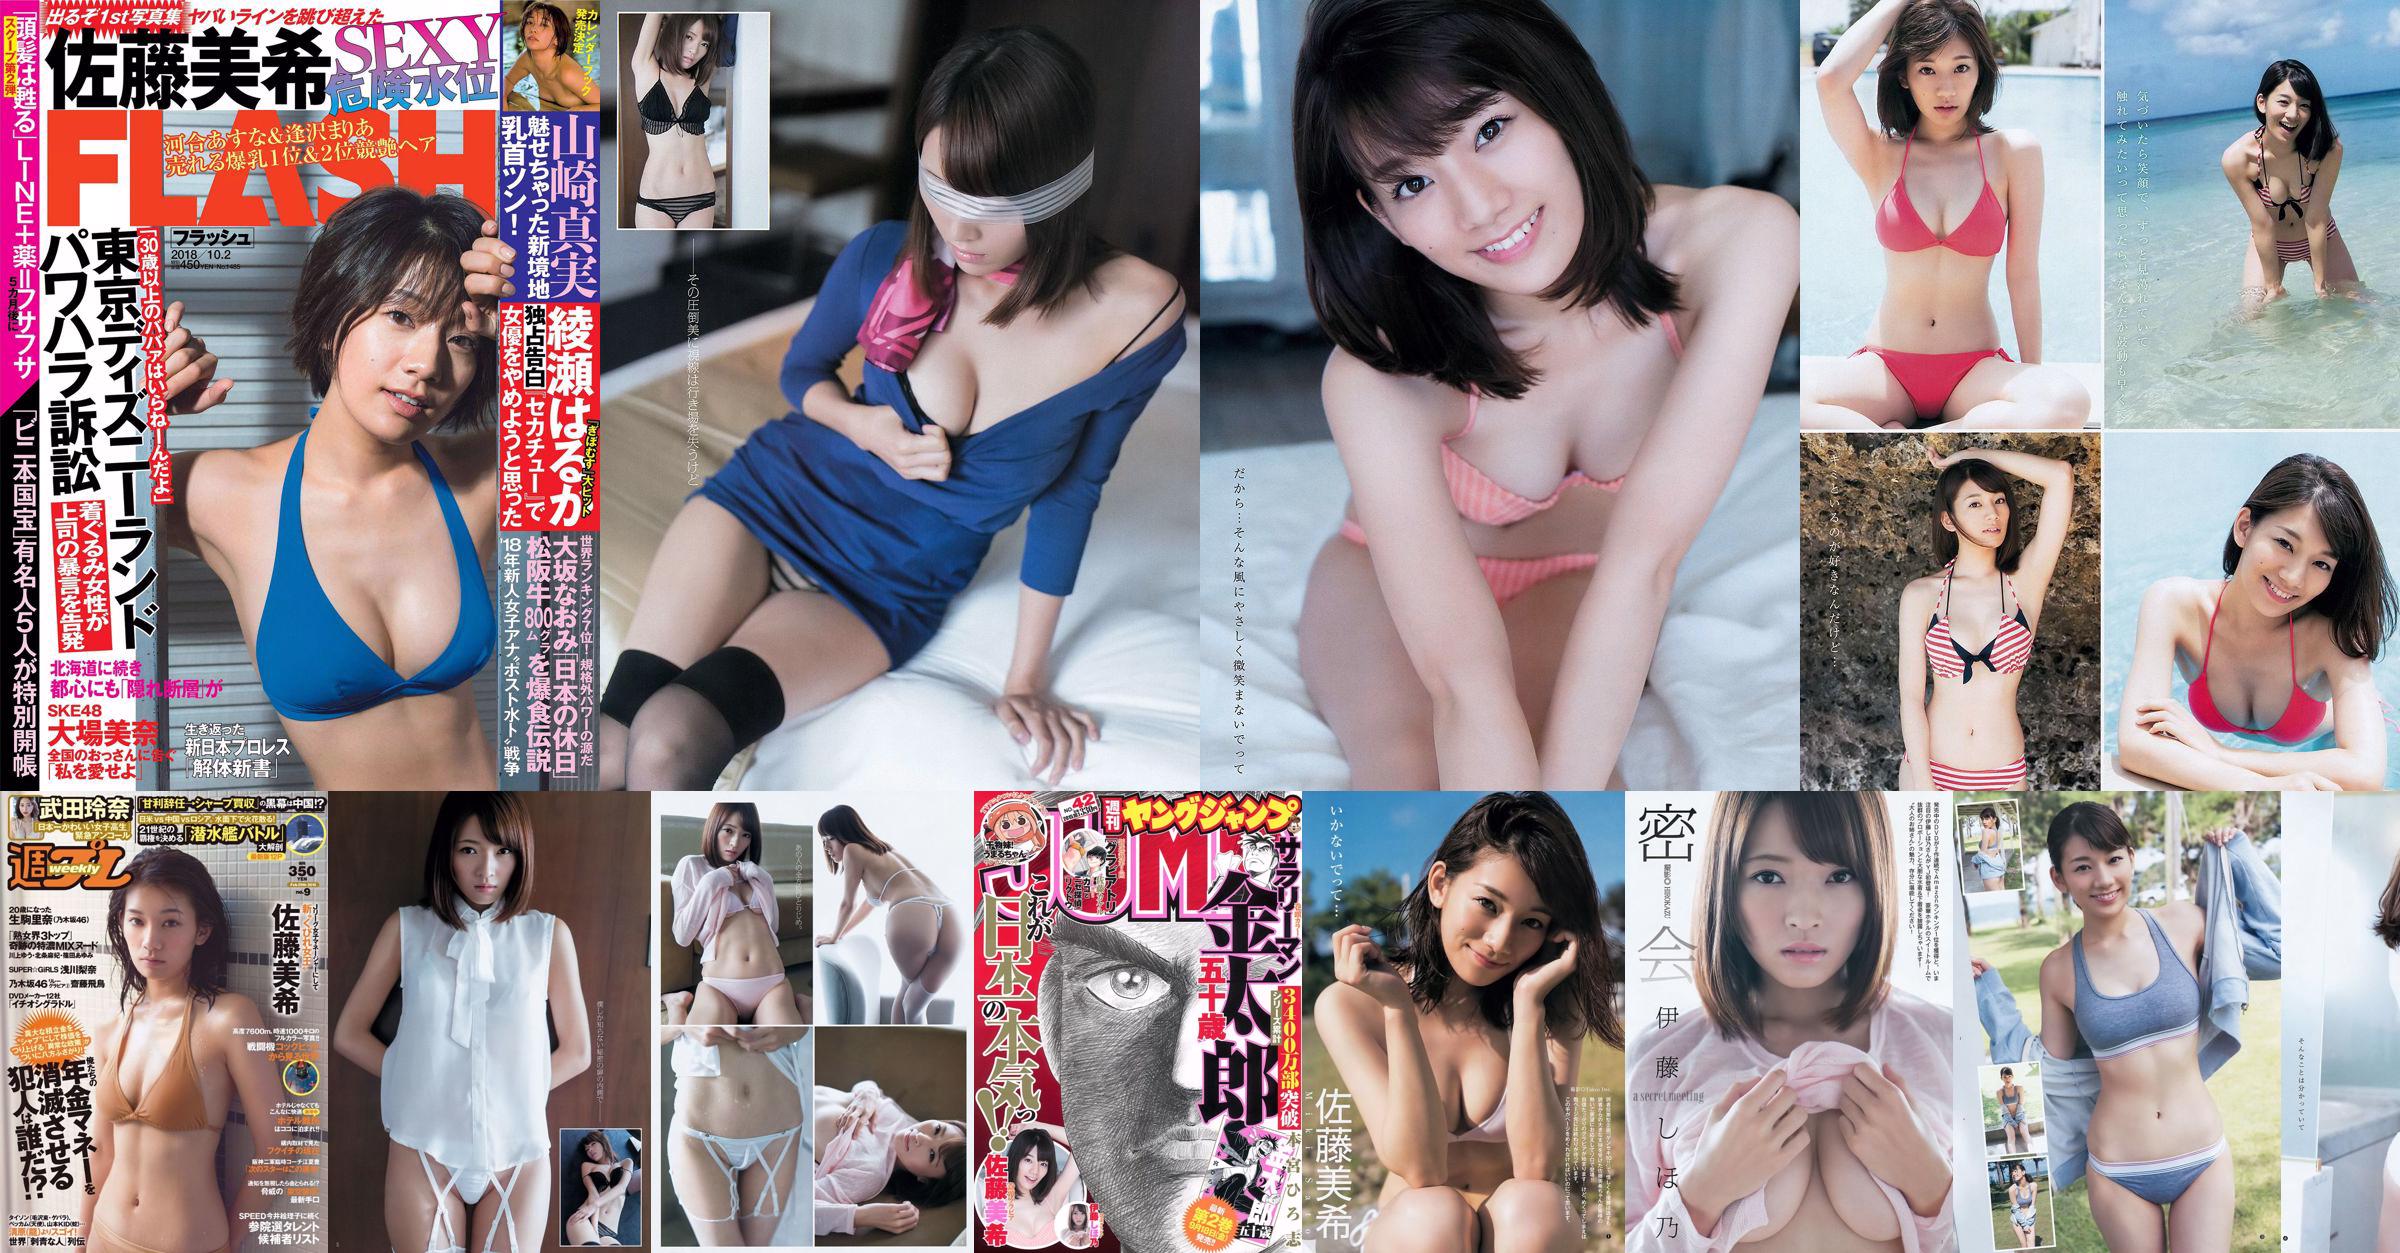 Miki Sato Rena Takeda Rina Ikoma Rina Asakawa Asuka Saito Masami Ichikawa [Wöchentlicher Playboy] 2016 Nr. 09 Foto No.bac99f Seite 8